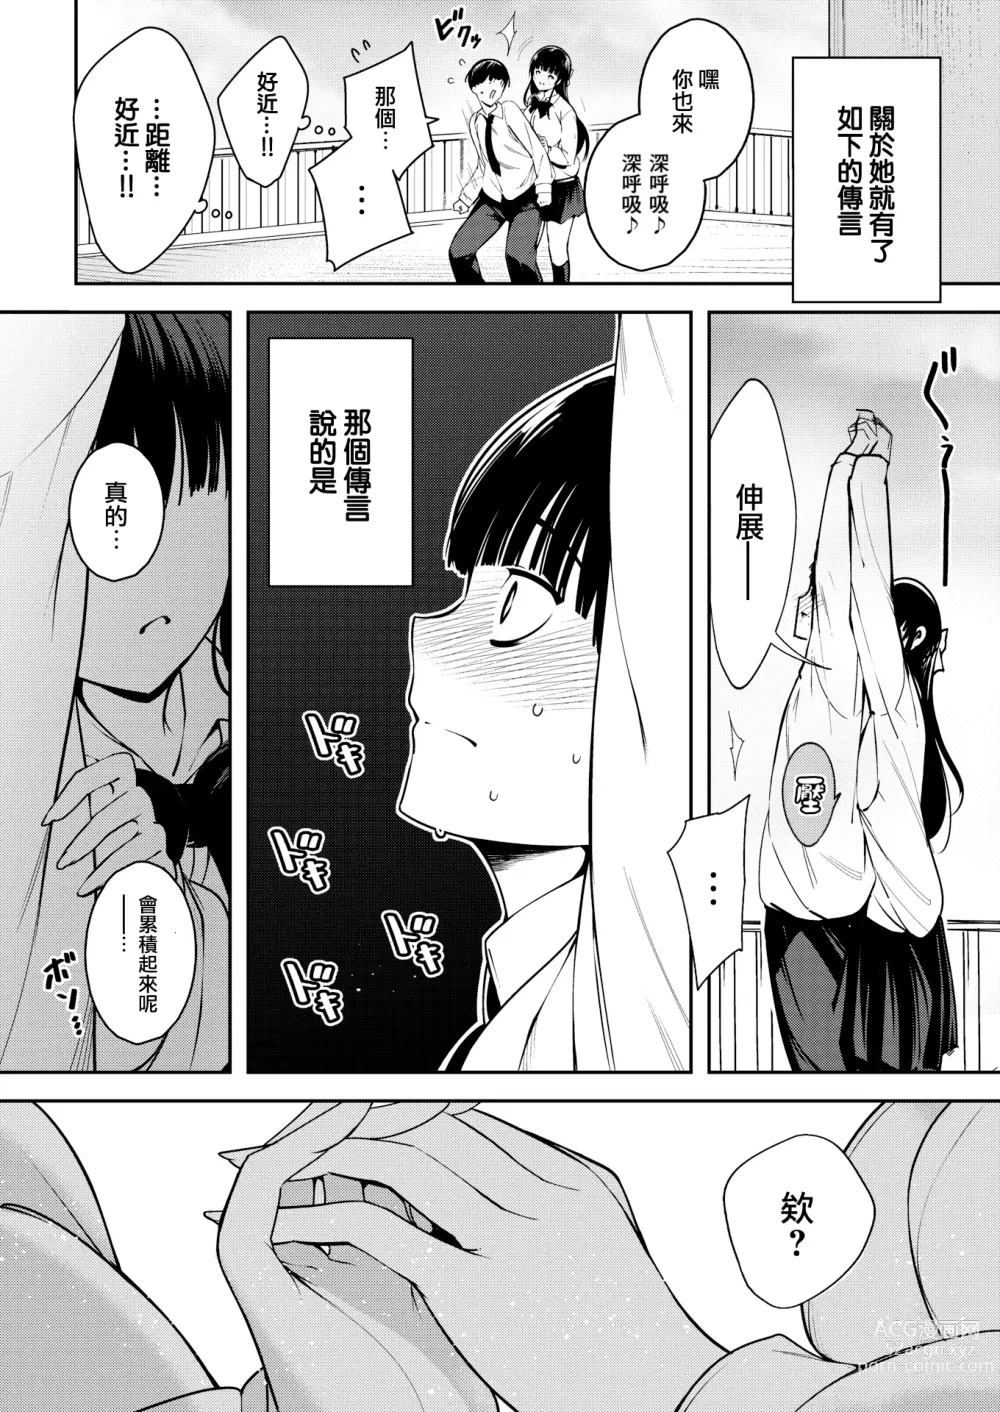 Page 5 of manga Aoi Sora no Mashita de